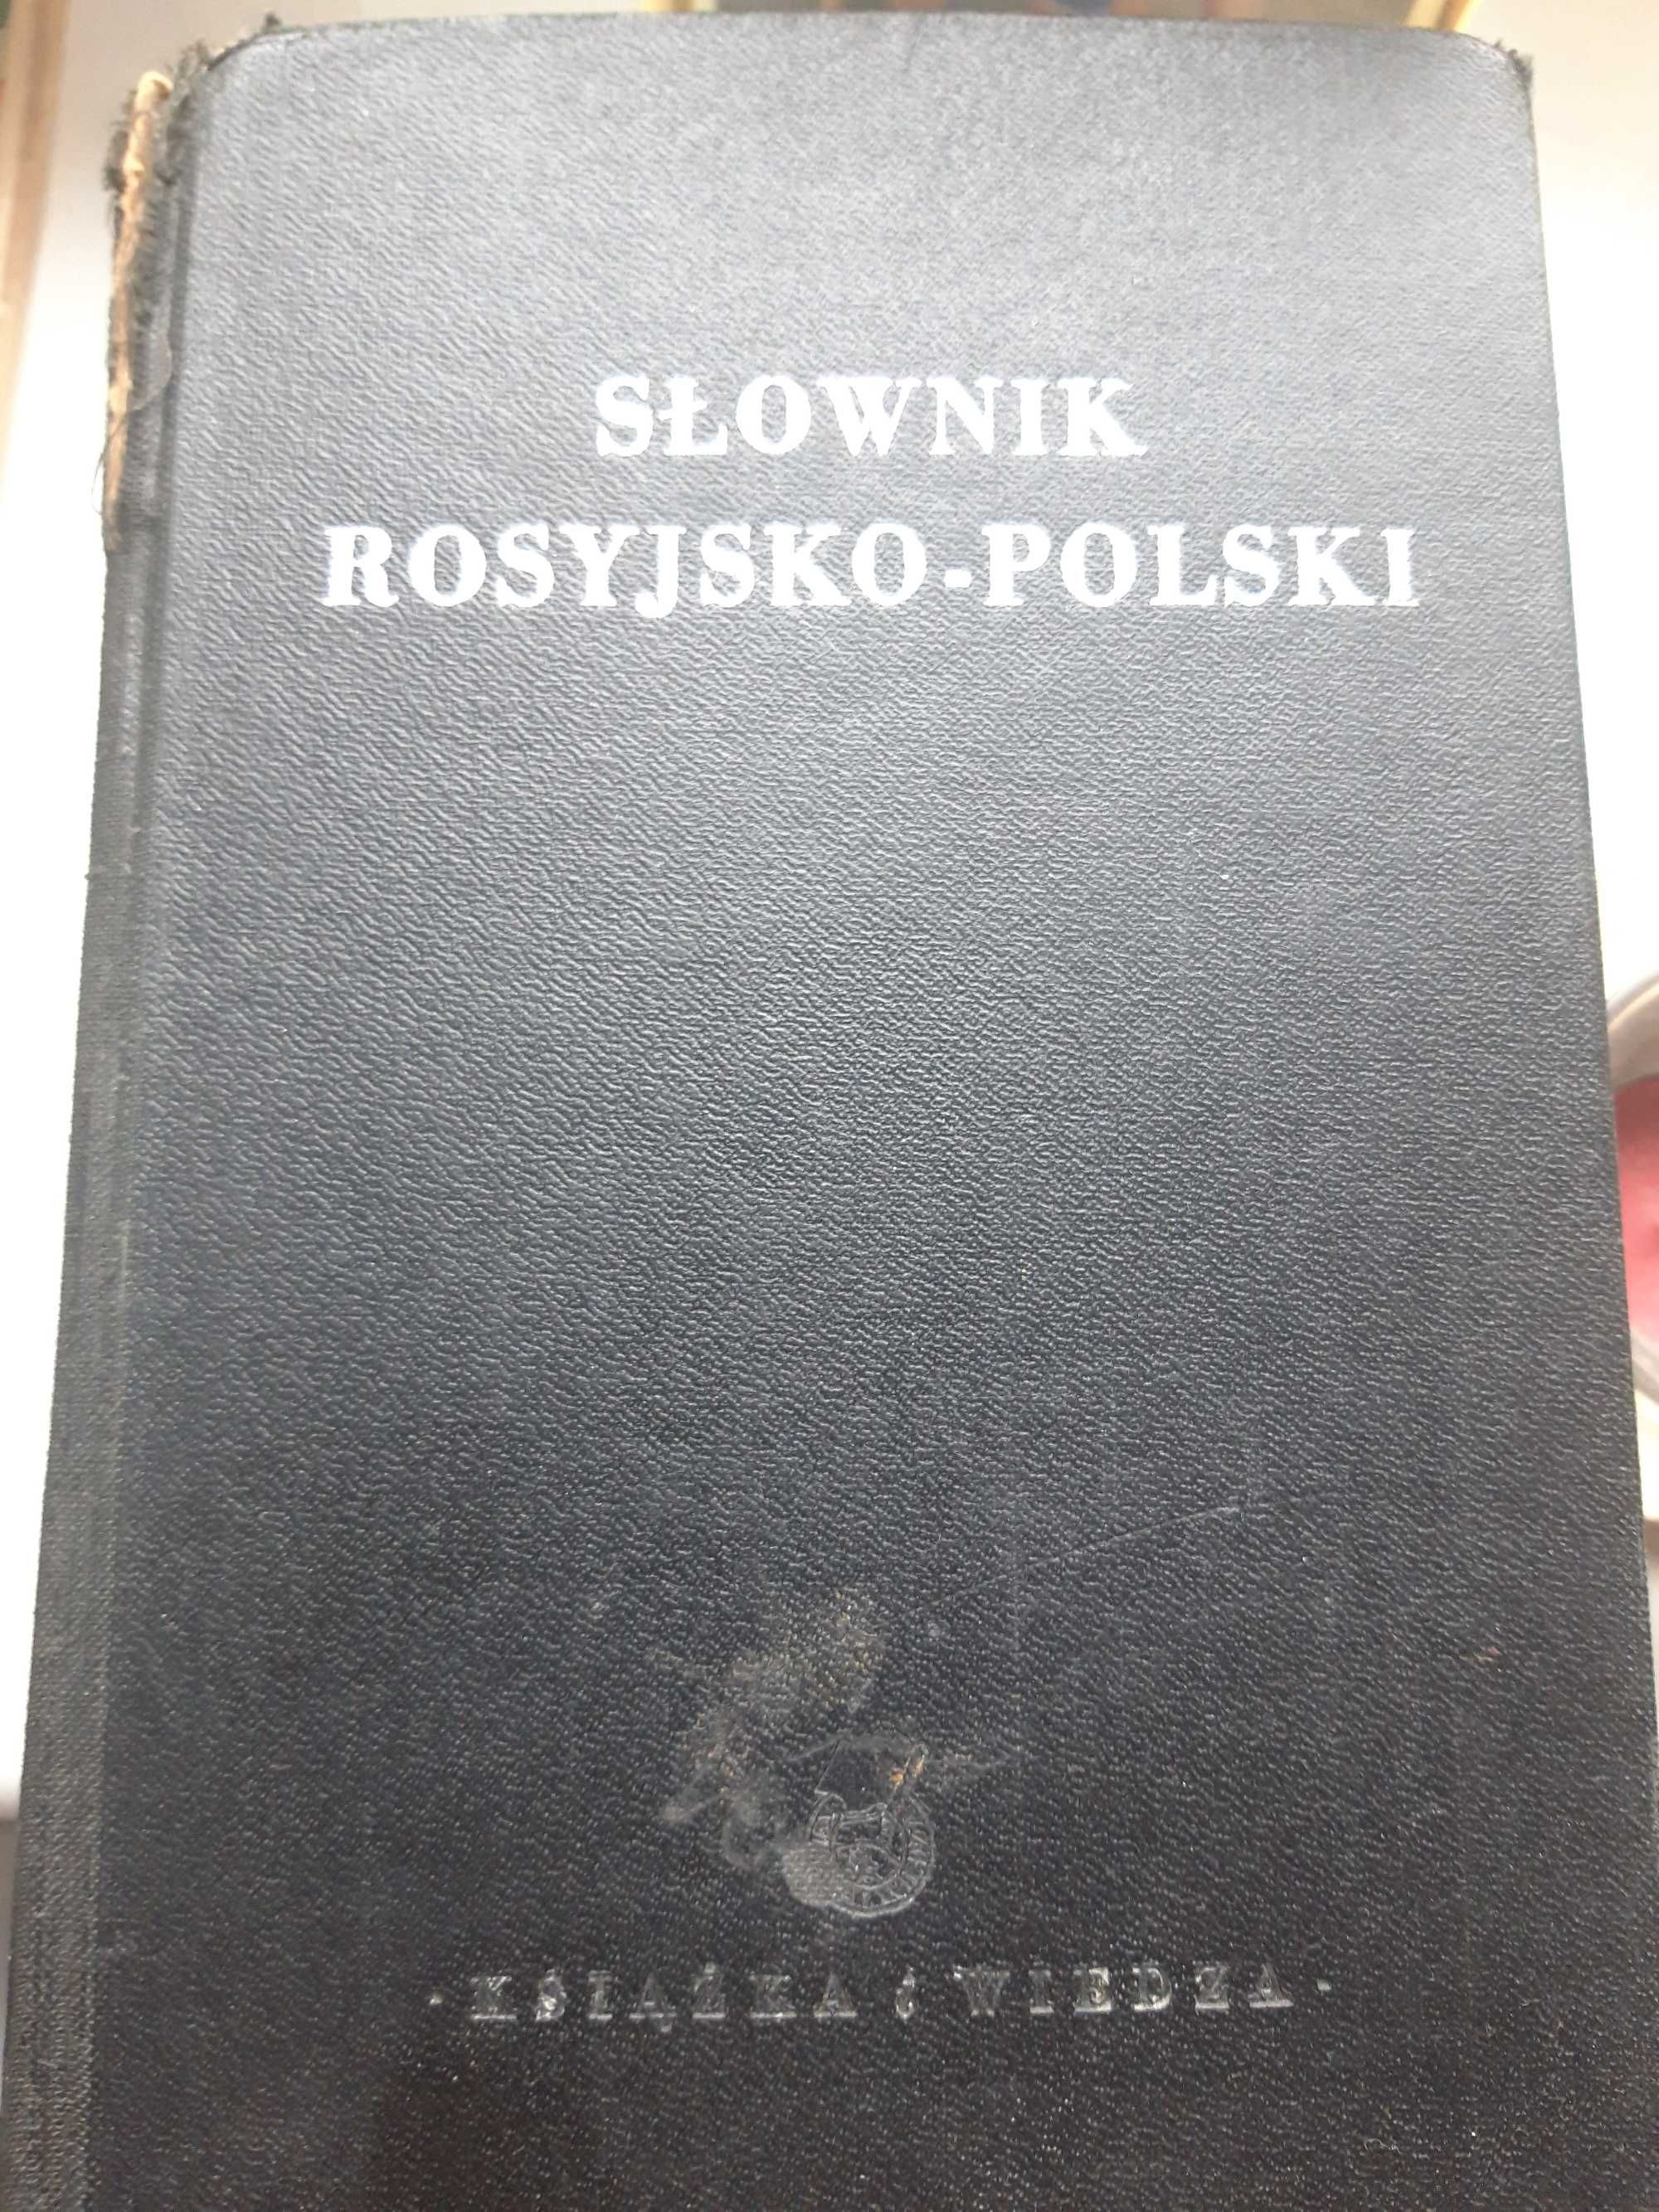 Slownik rosyjsko-polski z 1940 roku !!! (840 stron)